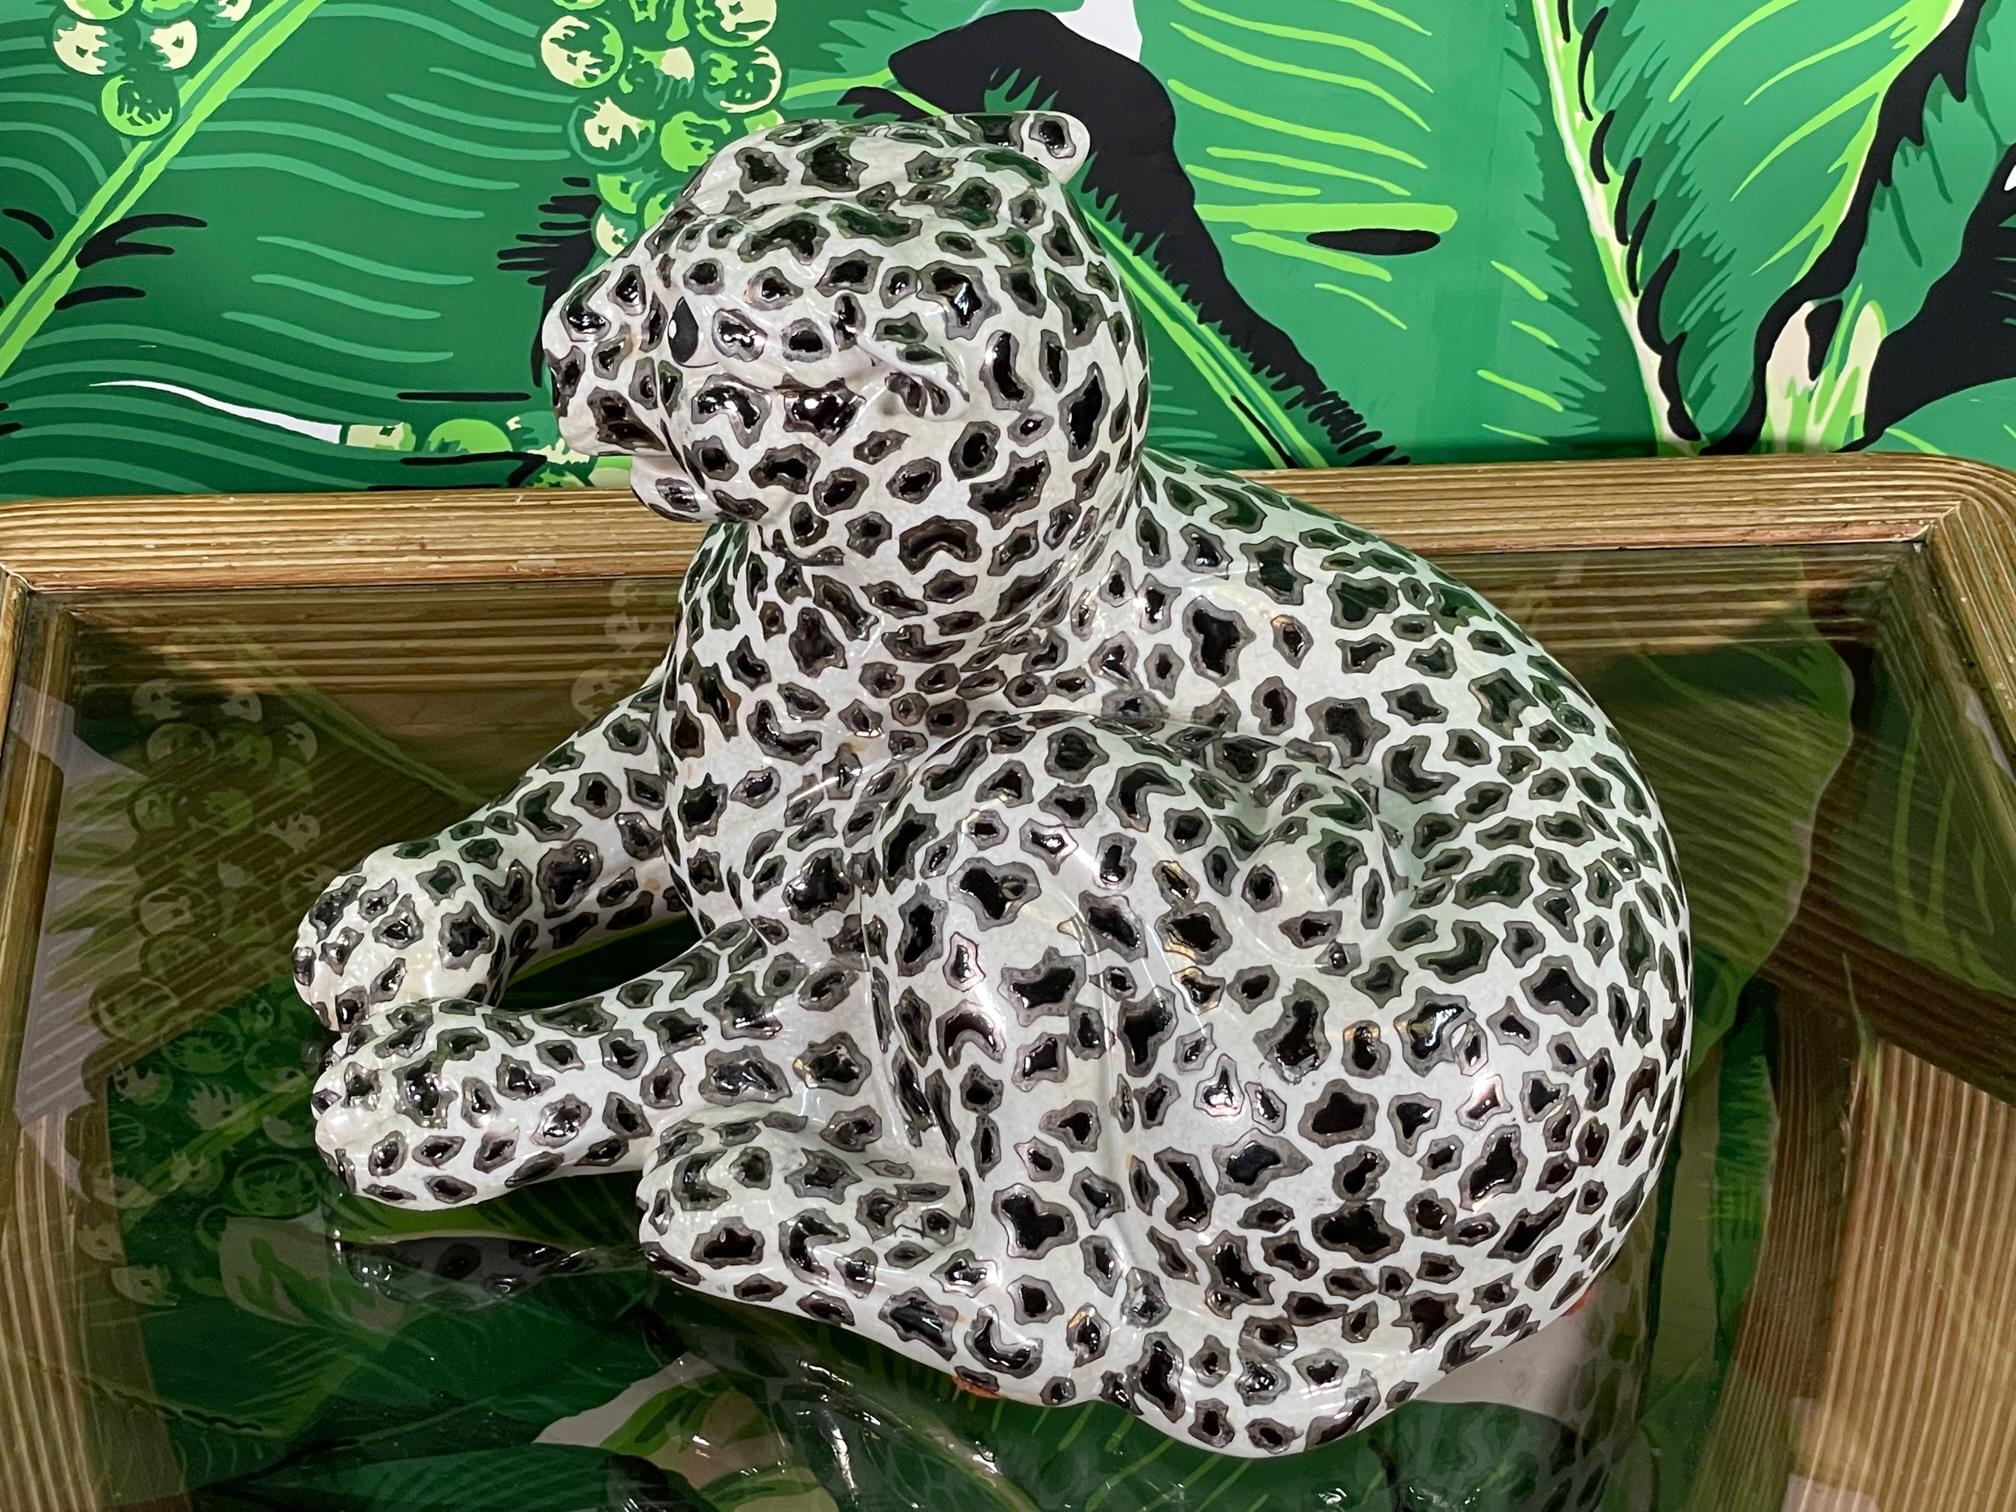 La figurine de léopard en porcelaine est ornée de feuilles d'argent et présente une finition émaillée brillante. Marqué 